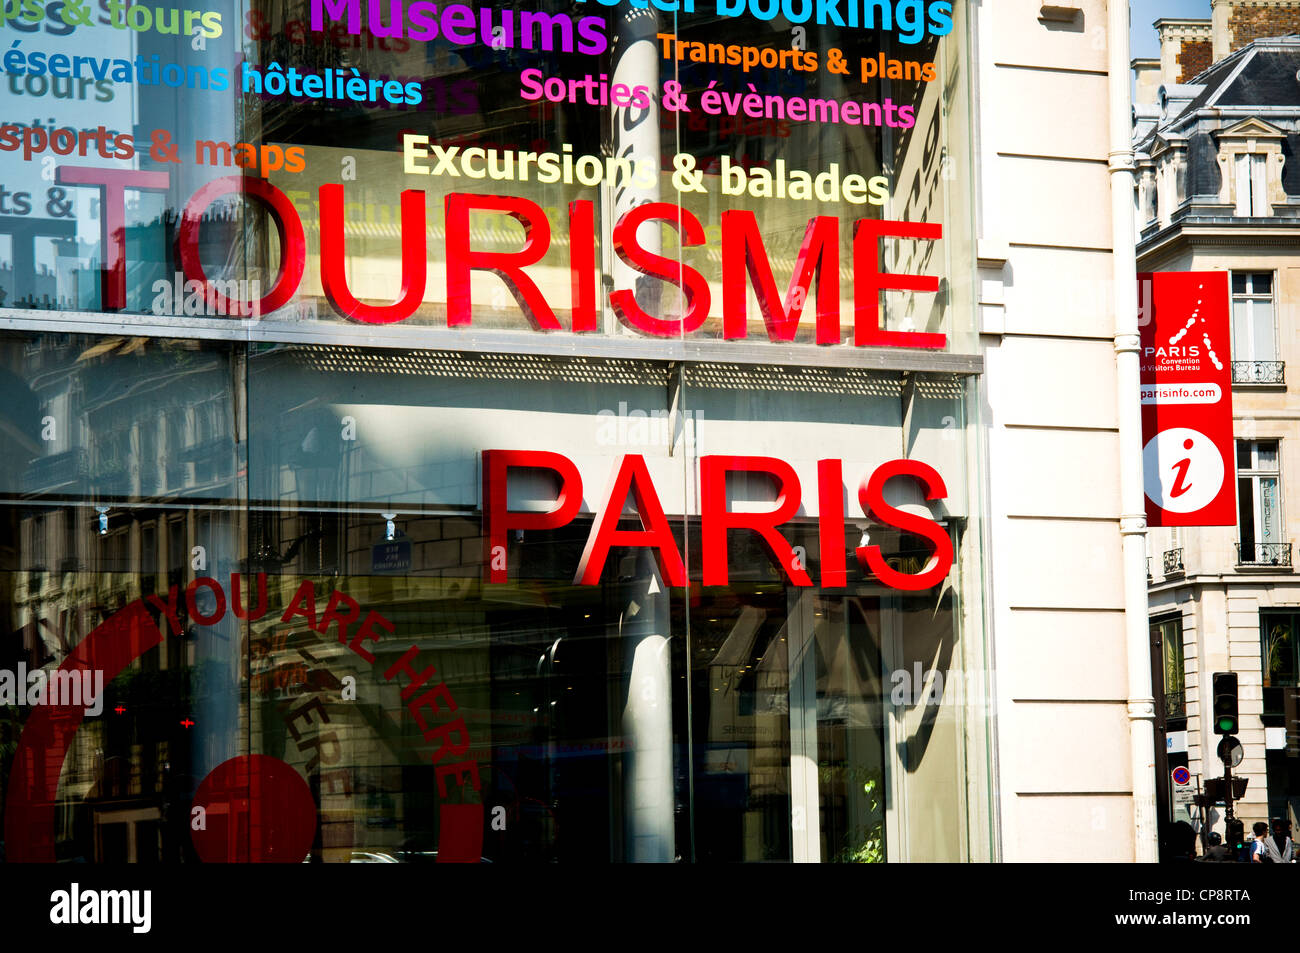 Paris Tourist Information Center, 25 Rue des Pyramides, Paris, France Stock Photo